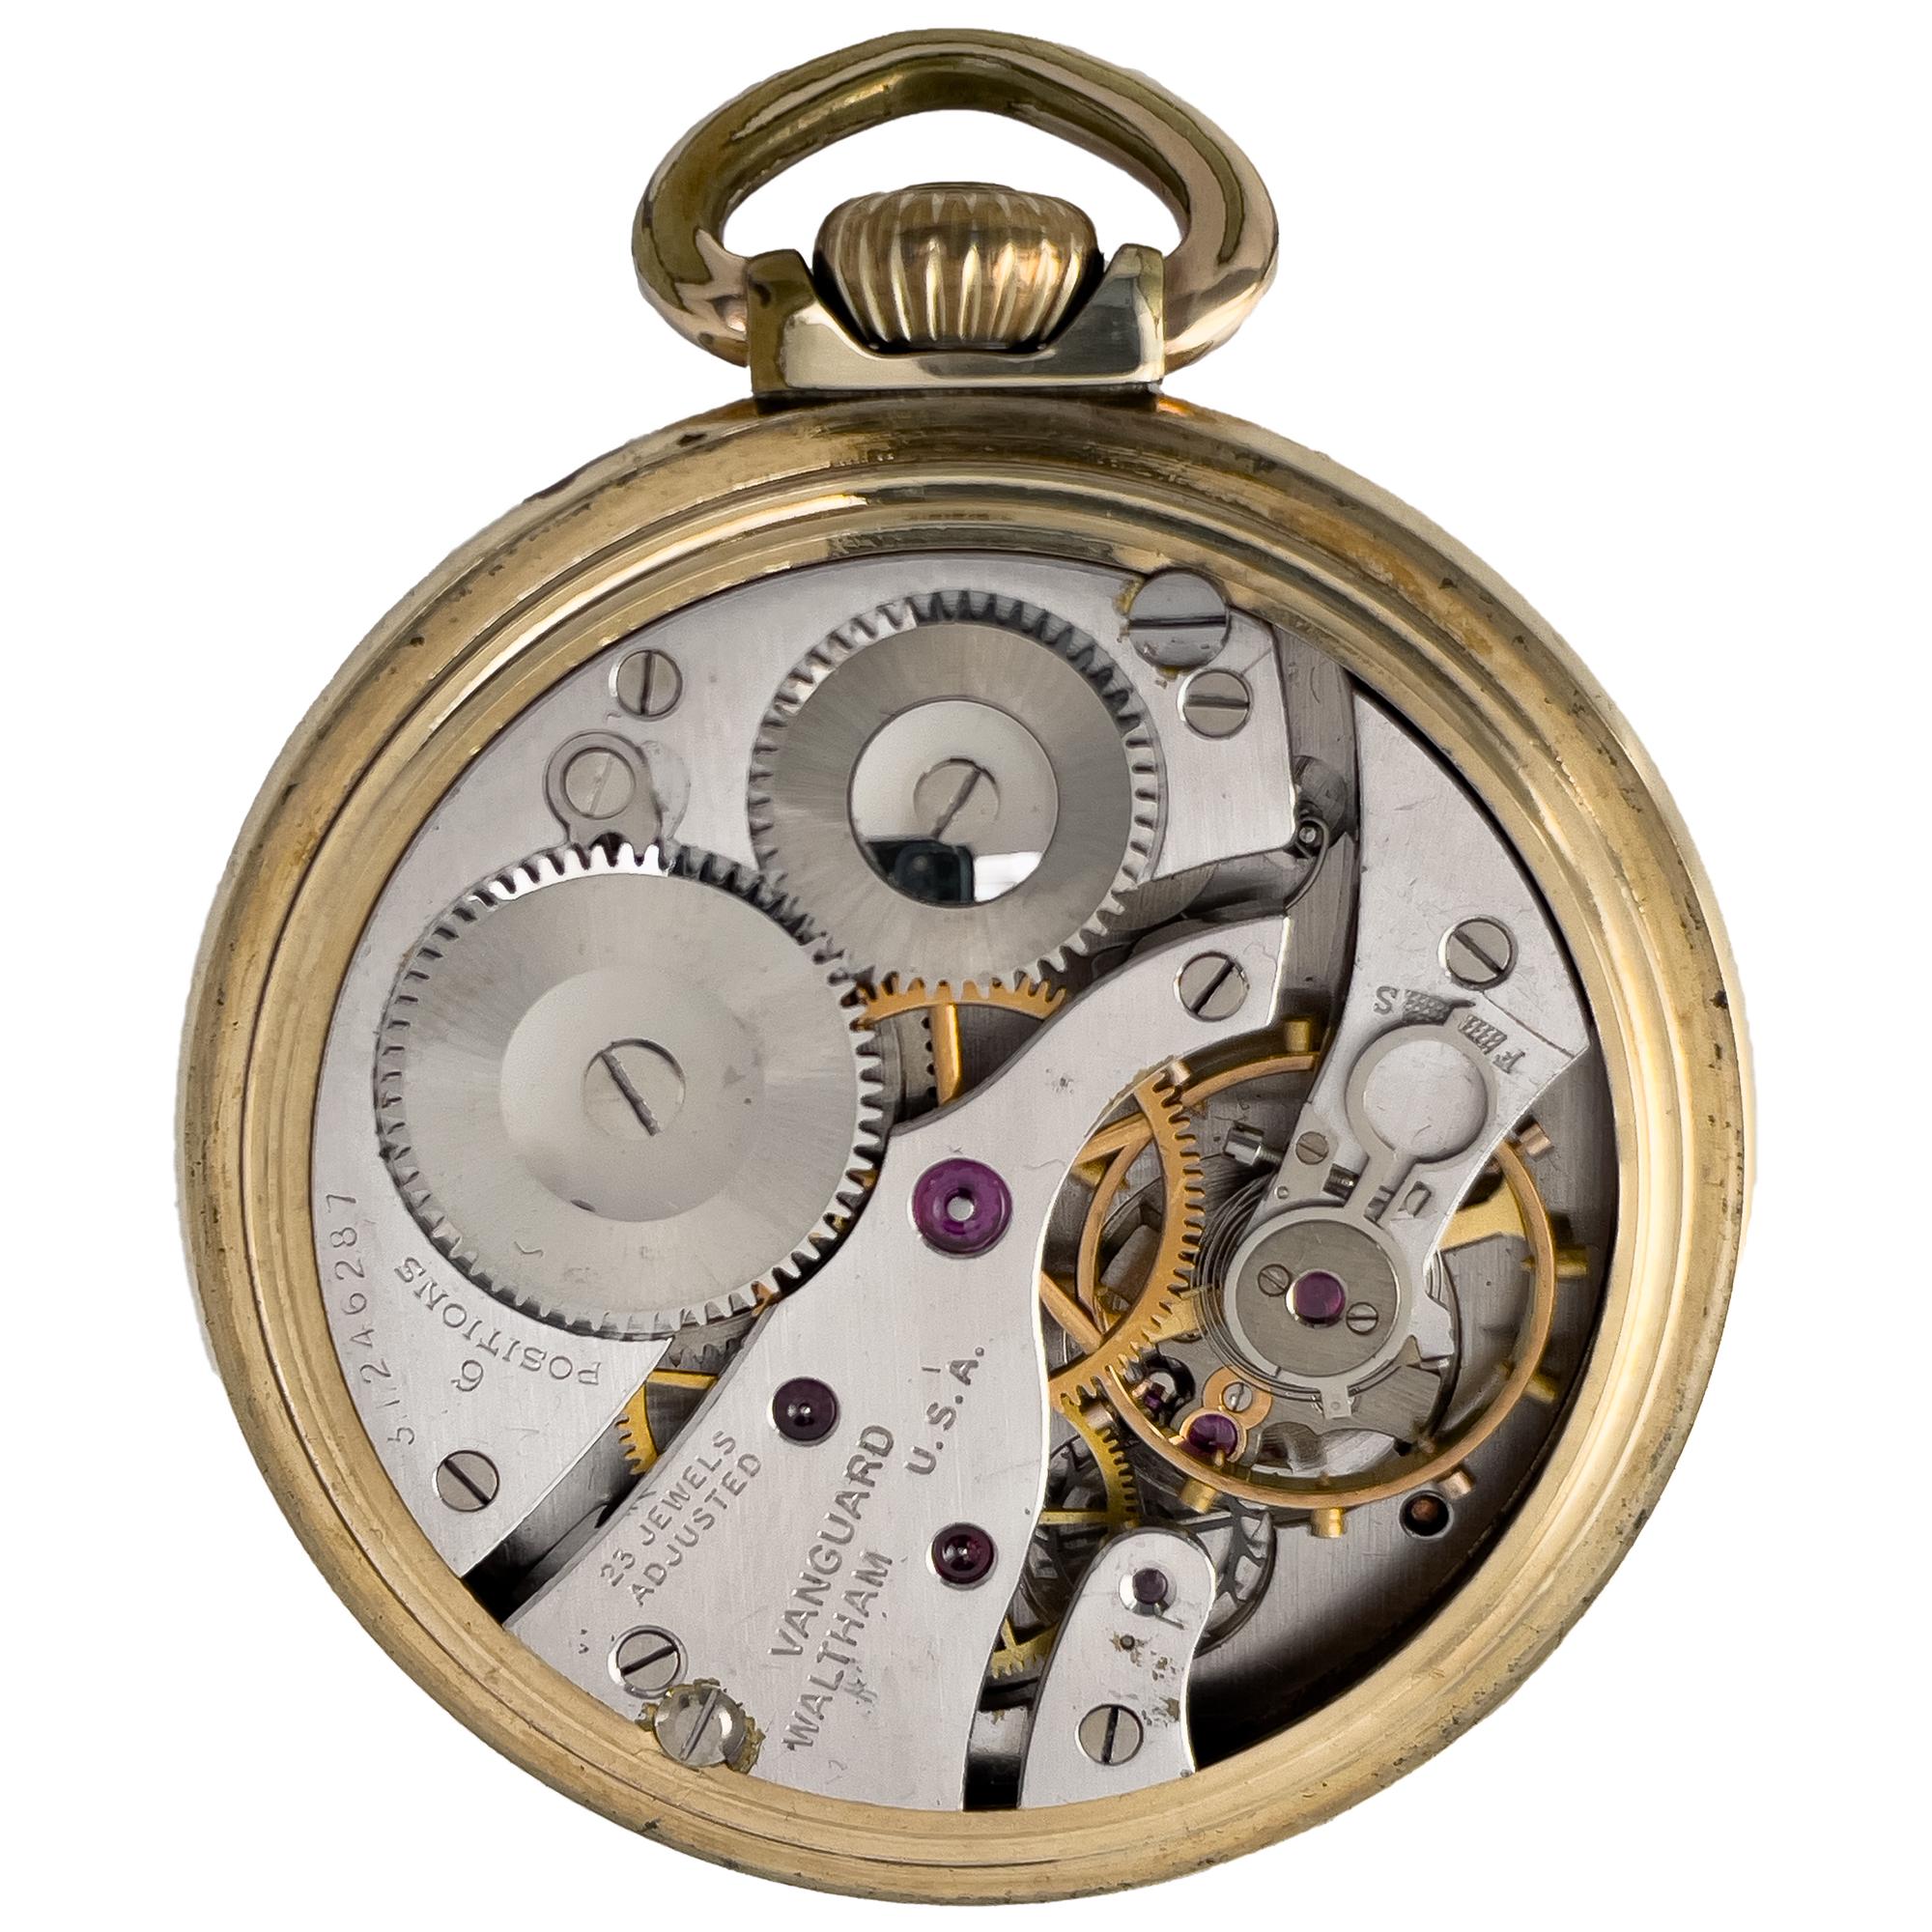 Waltham Vanguard Taschenuhr mit Goldfüllung. Uhrwerk mit manuellem Aufzug und 23 Juwelen, in 6 Positionen einstellbar. Größe 16/50 mm Gehäusegröße. Fall signiert 